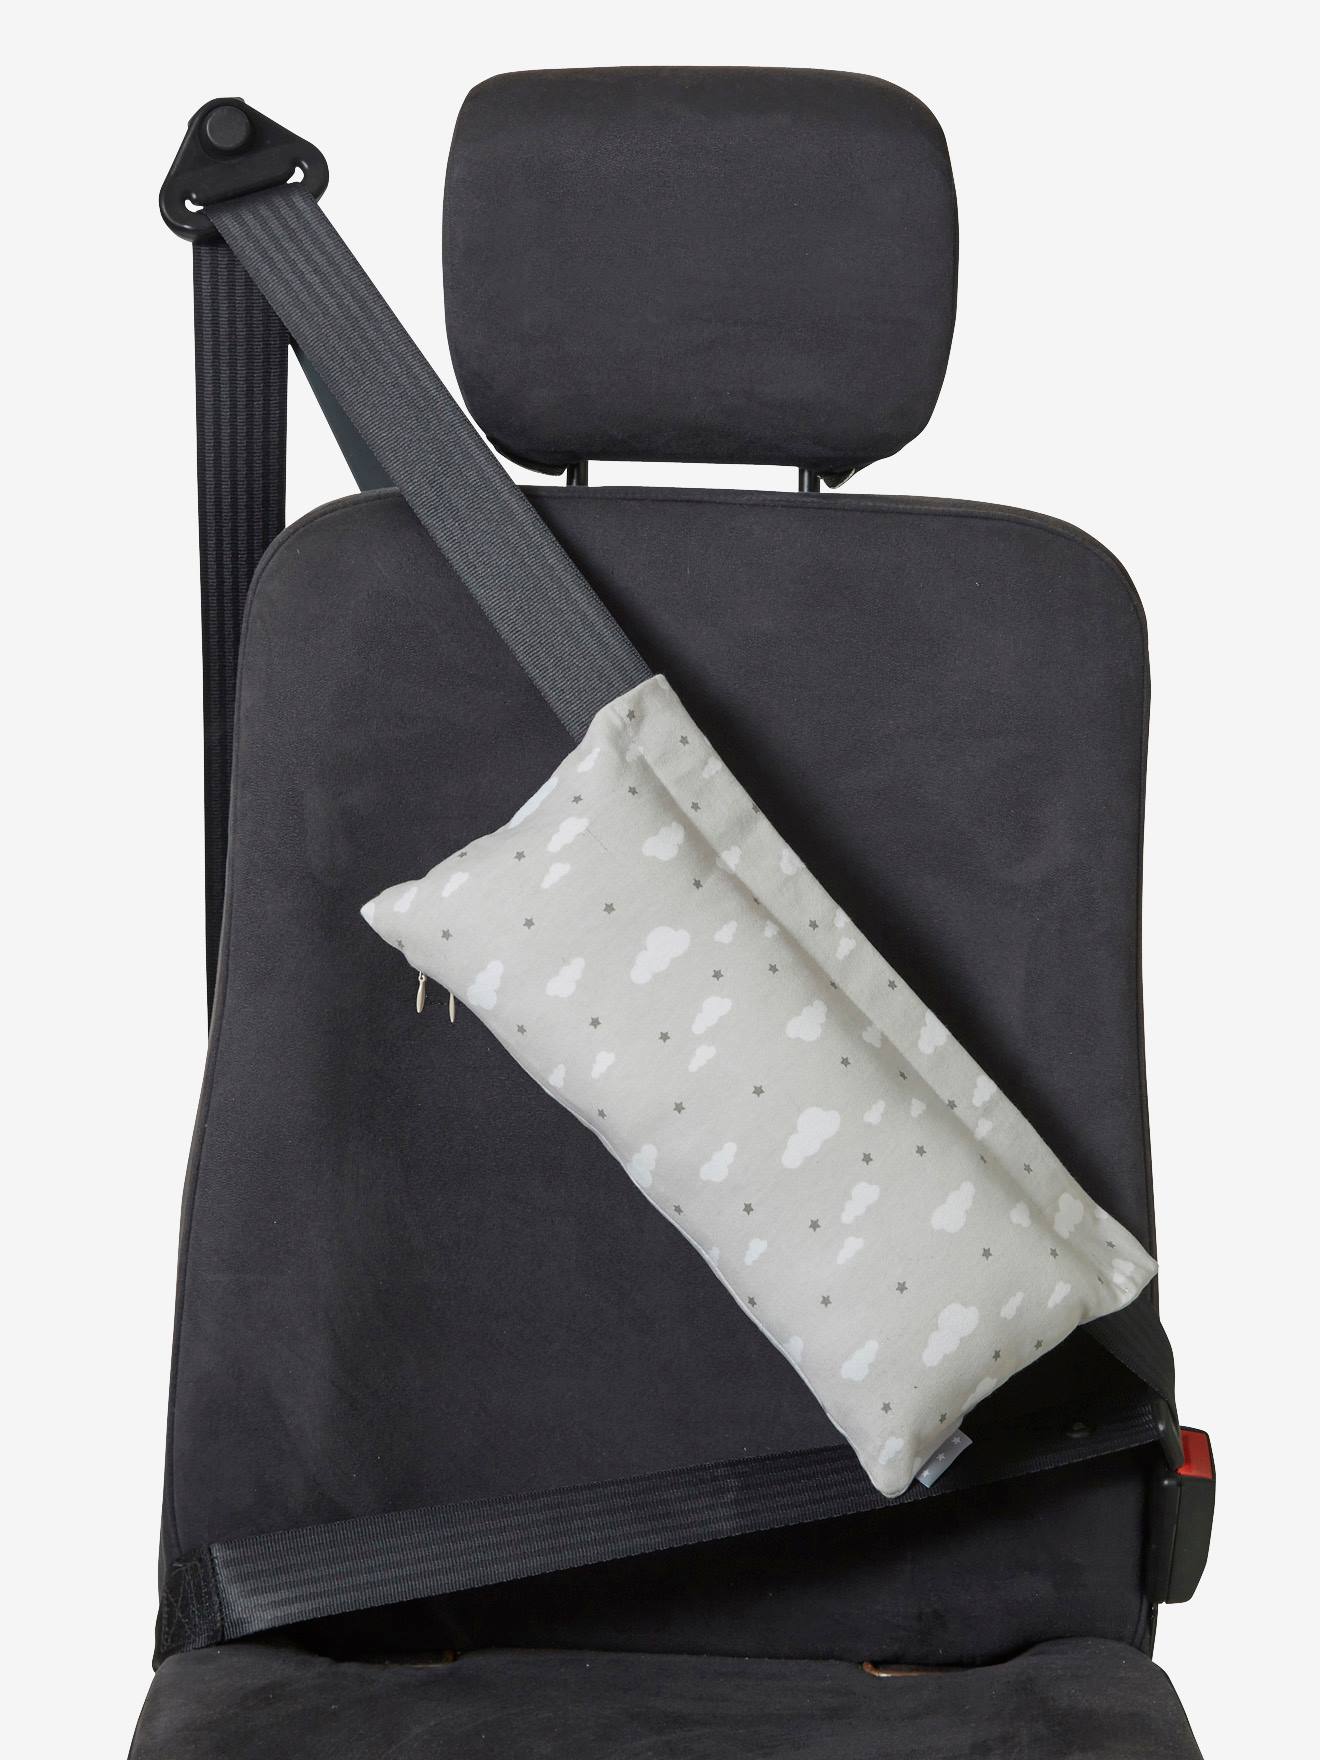 Oreiller de ceinture de sécurité pour enfants bébé ceinture - Temu France